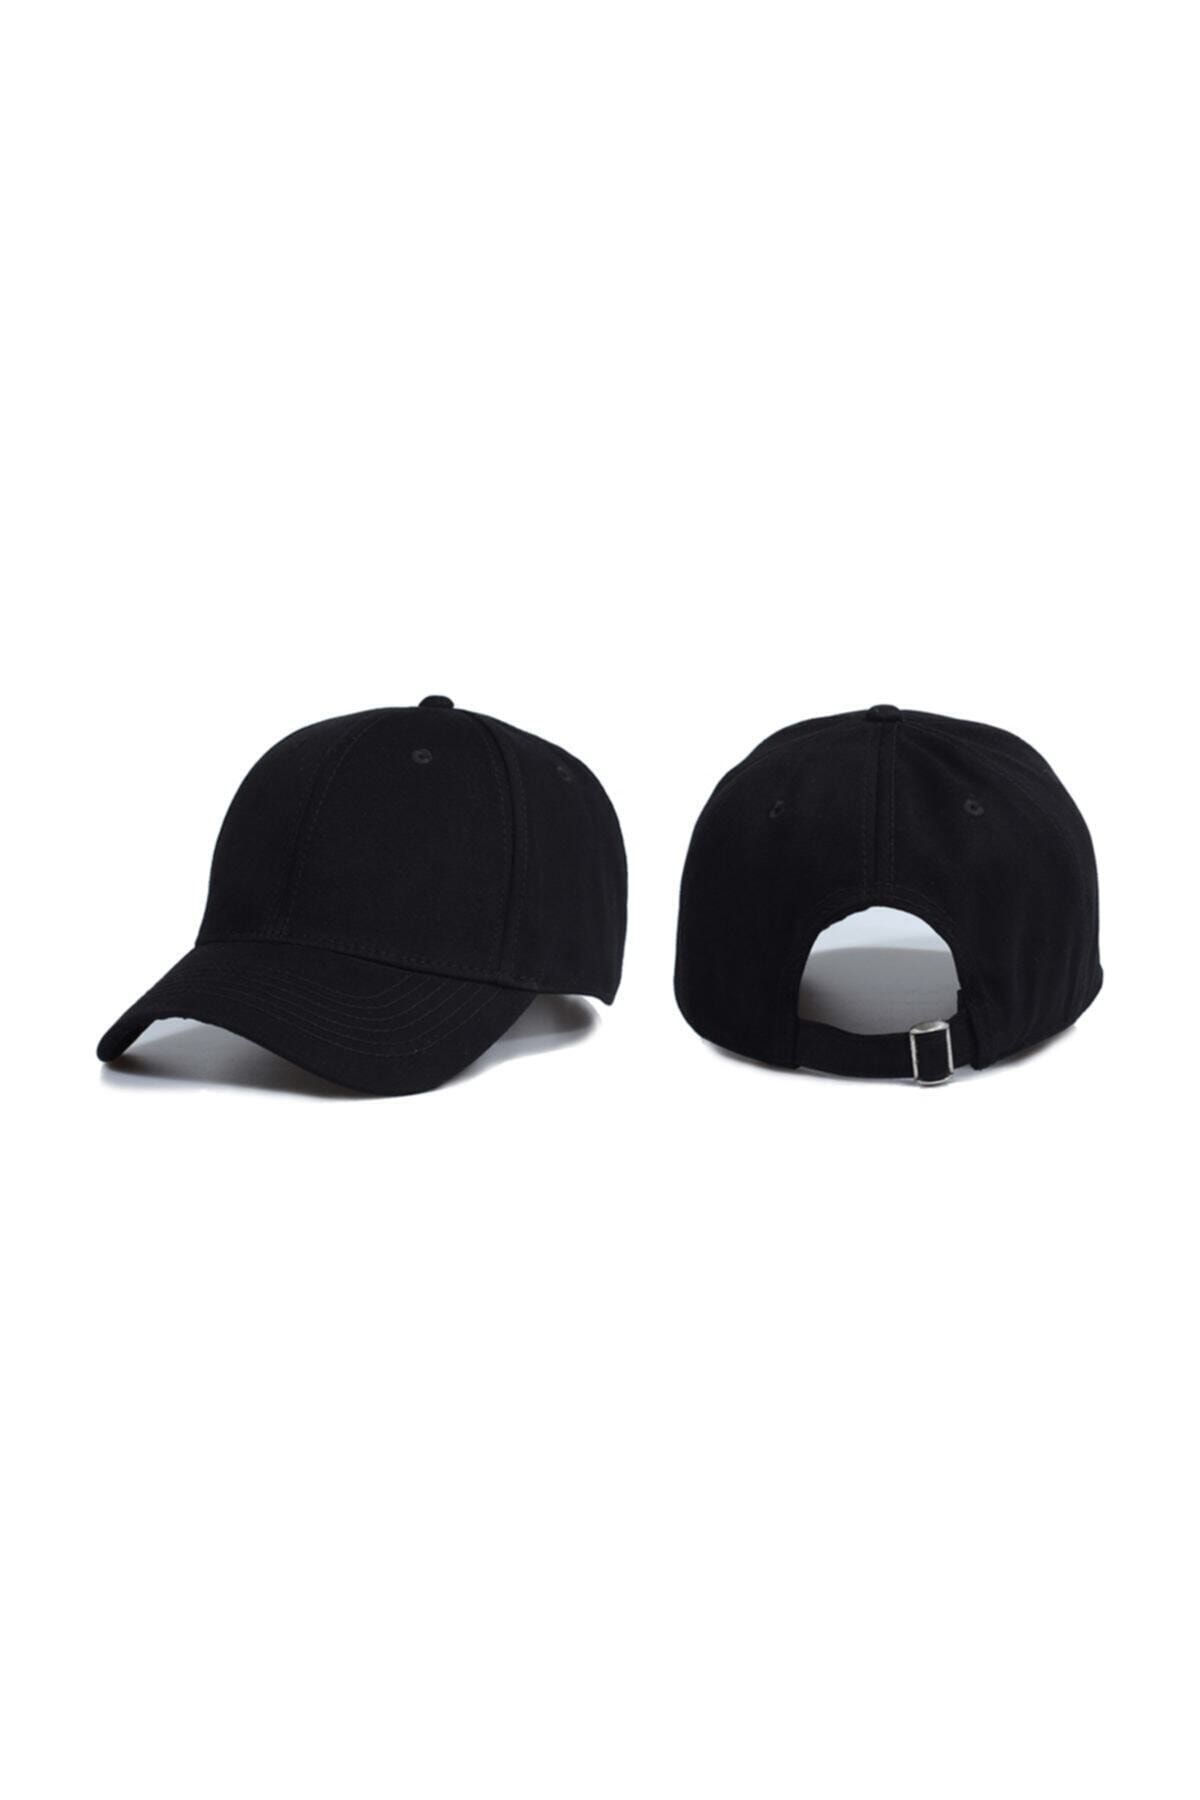 Genel Markalar Basic Şapka Modeli Siyah